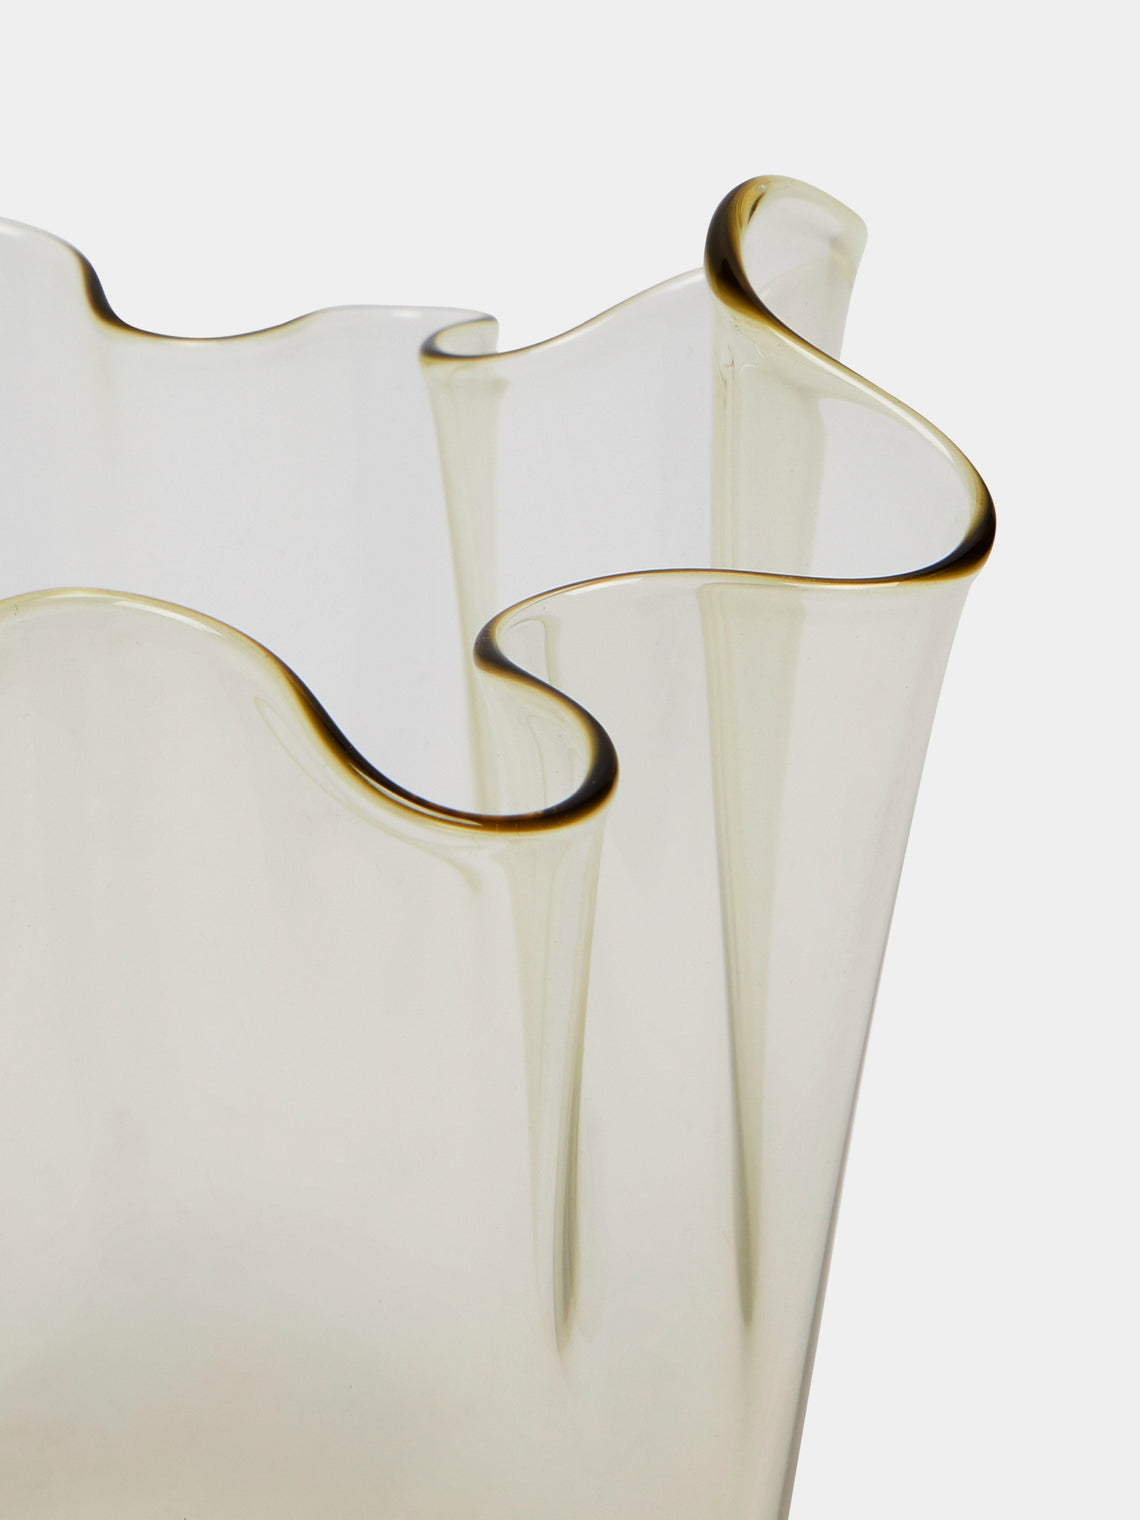 Venini - Fazzoletto Small Murano Glass Vase - Brown - ABASK